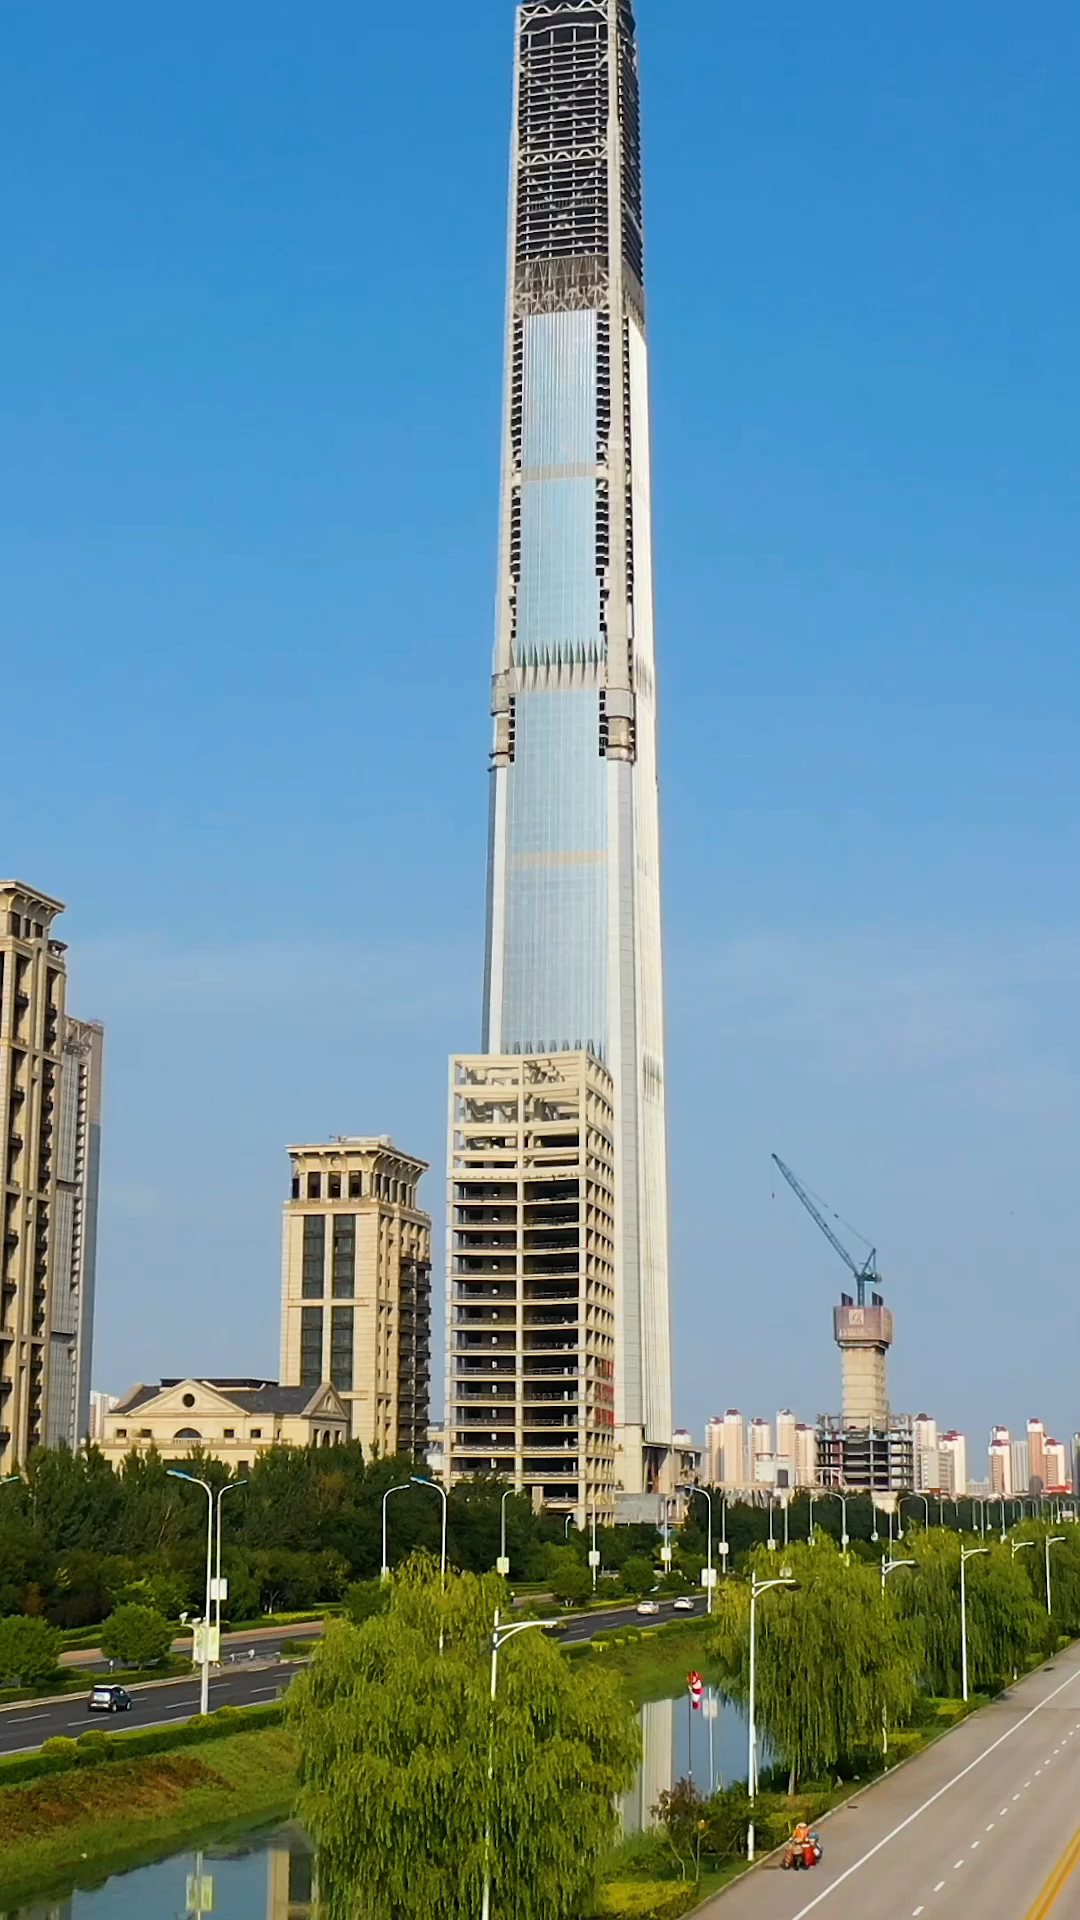 天津最高楼这座世界级的大楼最终会走向什么样的结局呢